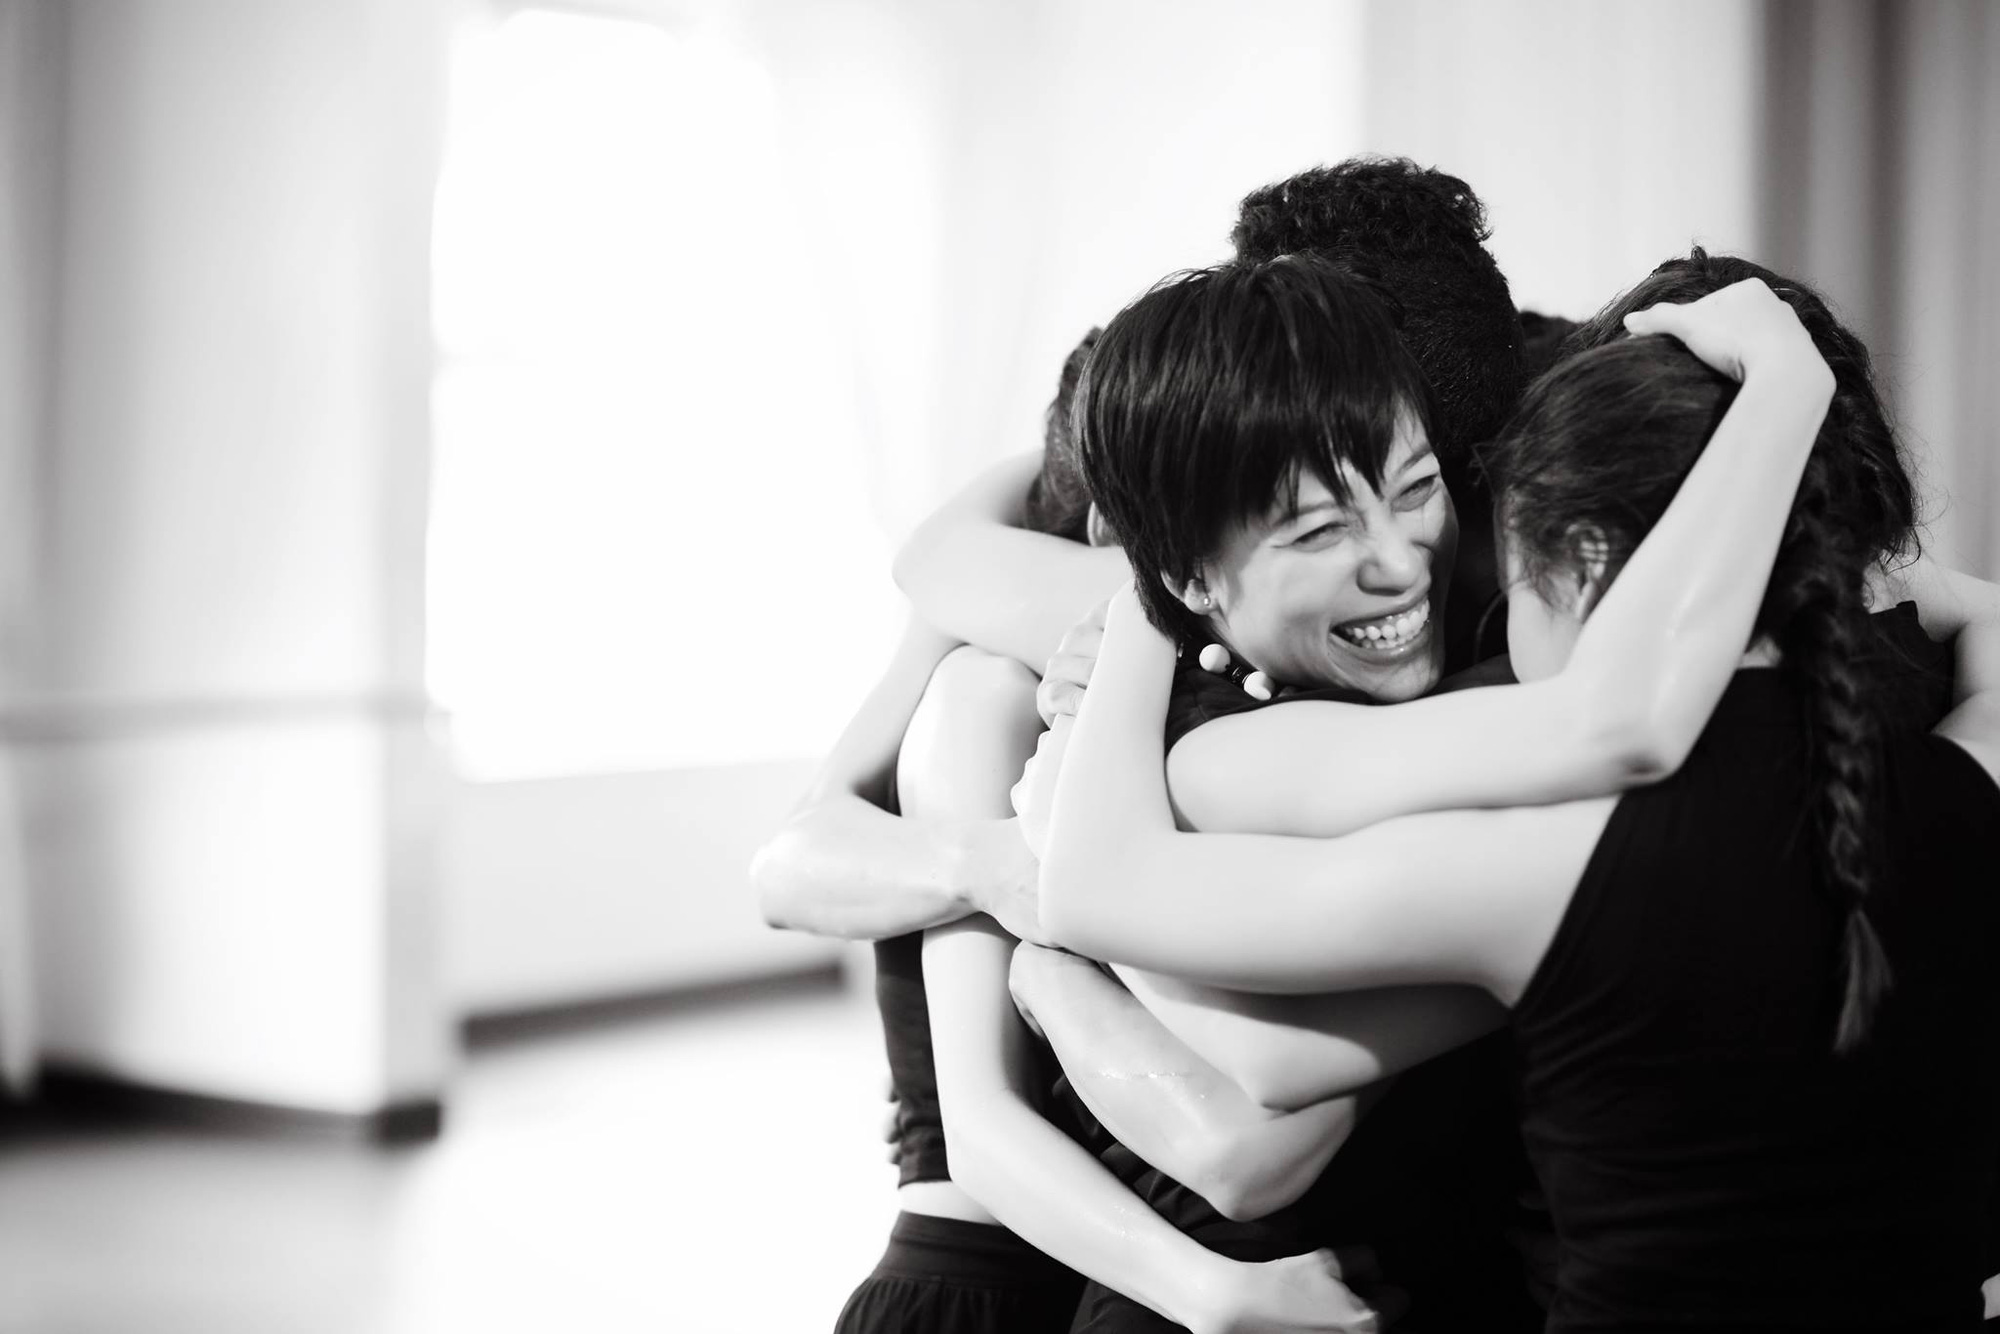 Giám đốc nhà hát Nhạc vũ kịch VN, đạo diễn - biên đạo múa Trần Ly Ly: “Đã đến lúc những sản phẩm nghệ thuật lớn trở thành nhu cầu thật của xã hội” - Ảnh 5.